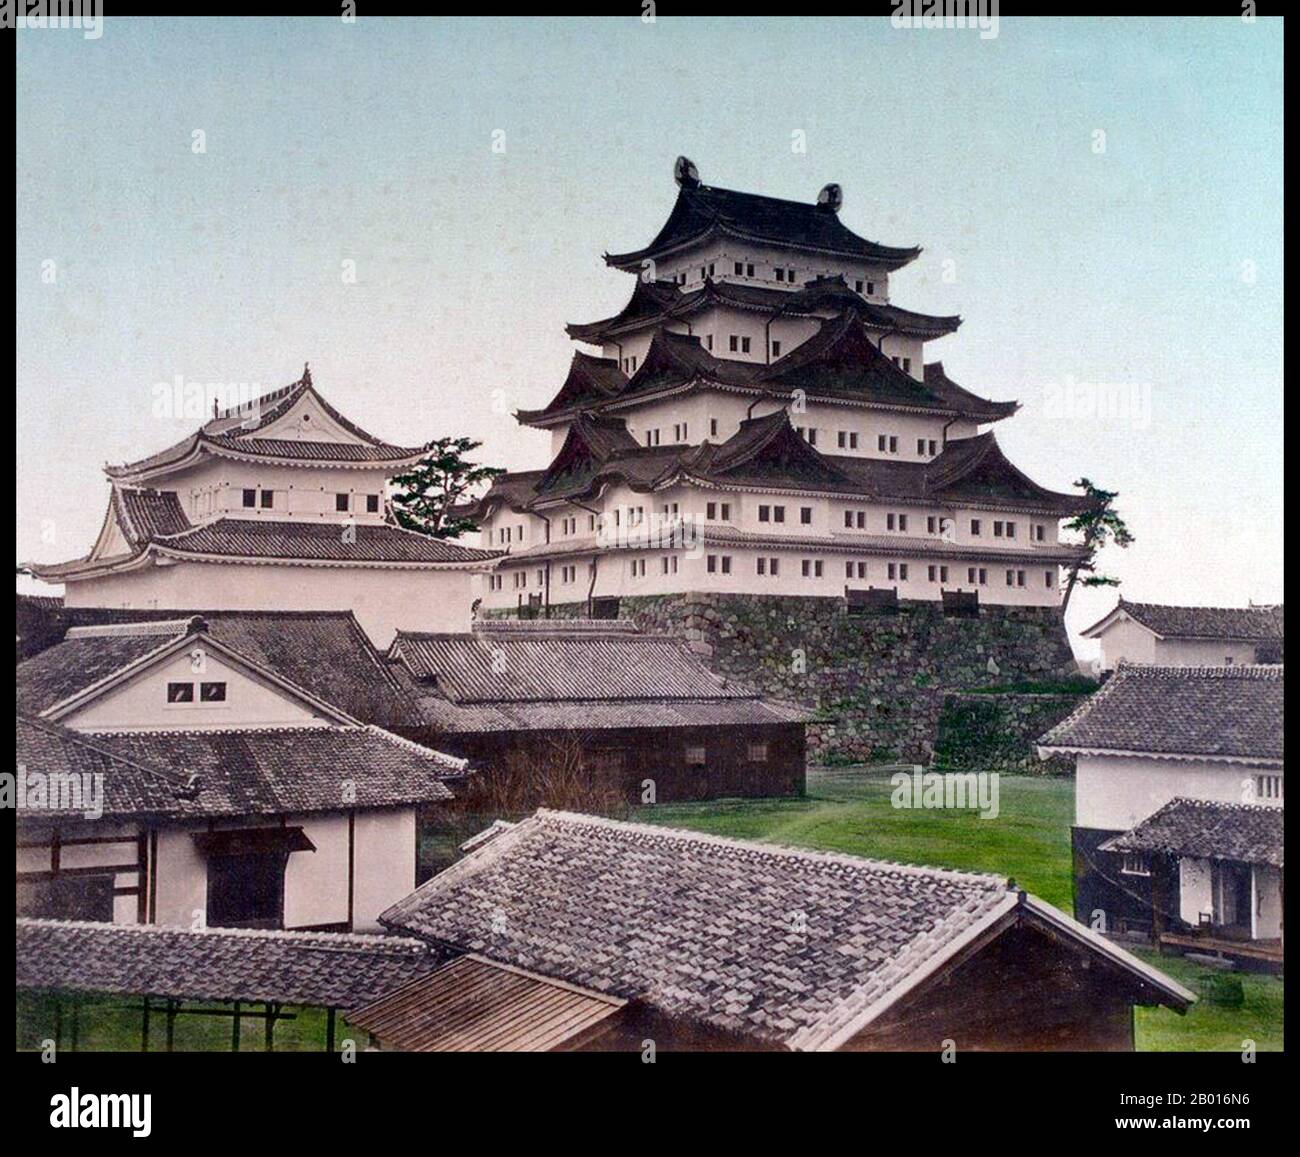 Giappone: Castello di Nagoya. Fotografia di Tamamura Kozaburo (1856-1923), c.. 1879 il Castello di Nagoya (Nagoya-jō) è un castello situato a Nagoya, Giappone centrale. Fu costruito dal dominio Owari nel 1612. Durante il periodo Edo, il castello di Nagoya era il centro di una delle più importanti città del castello in Giappone, Nagoya-Juku, e includeva le fermate più significative lungo il Minoji, che collegava il Tōkaidō con il Nakasendō (principali autostrade nazionali). Foto Stock